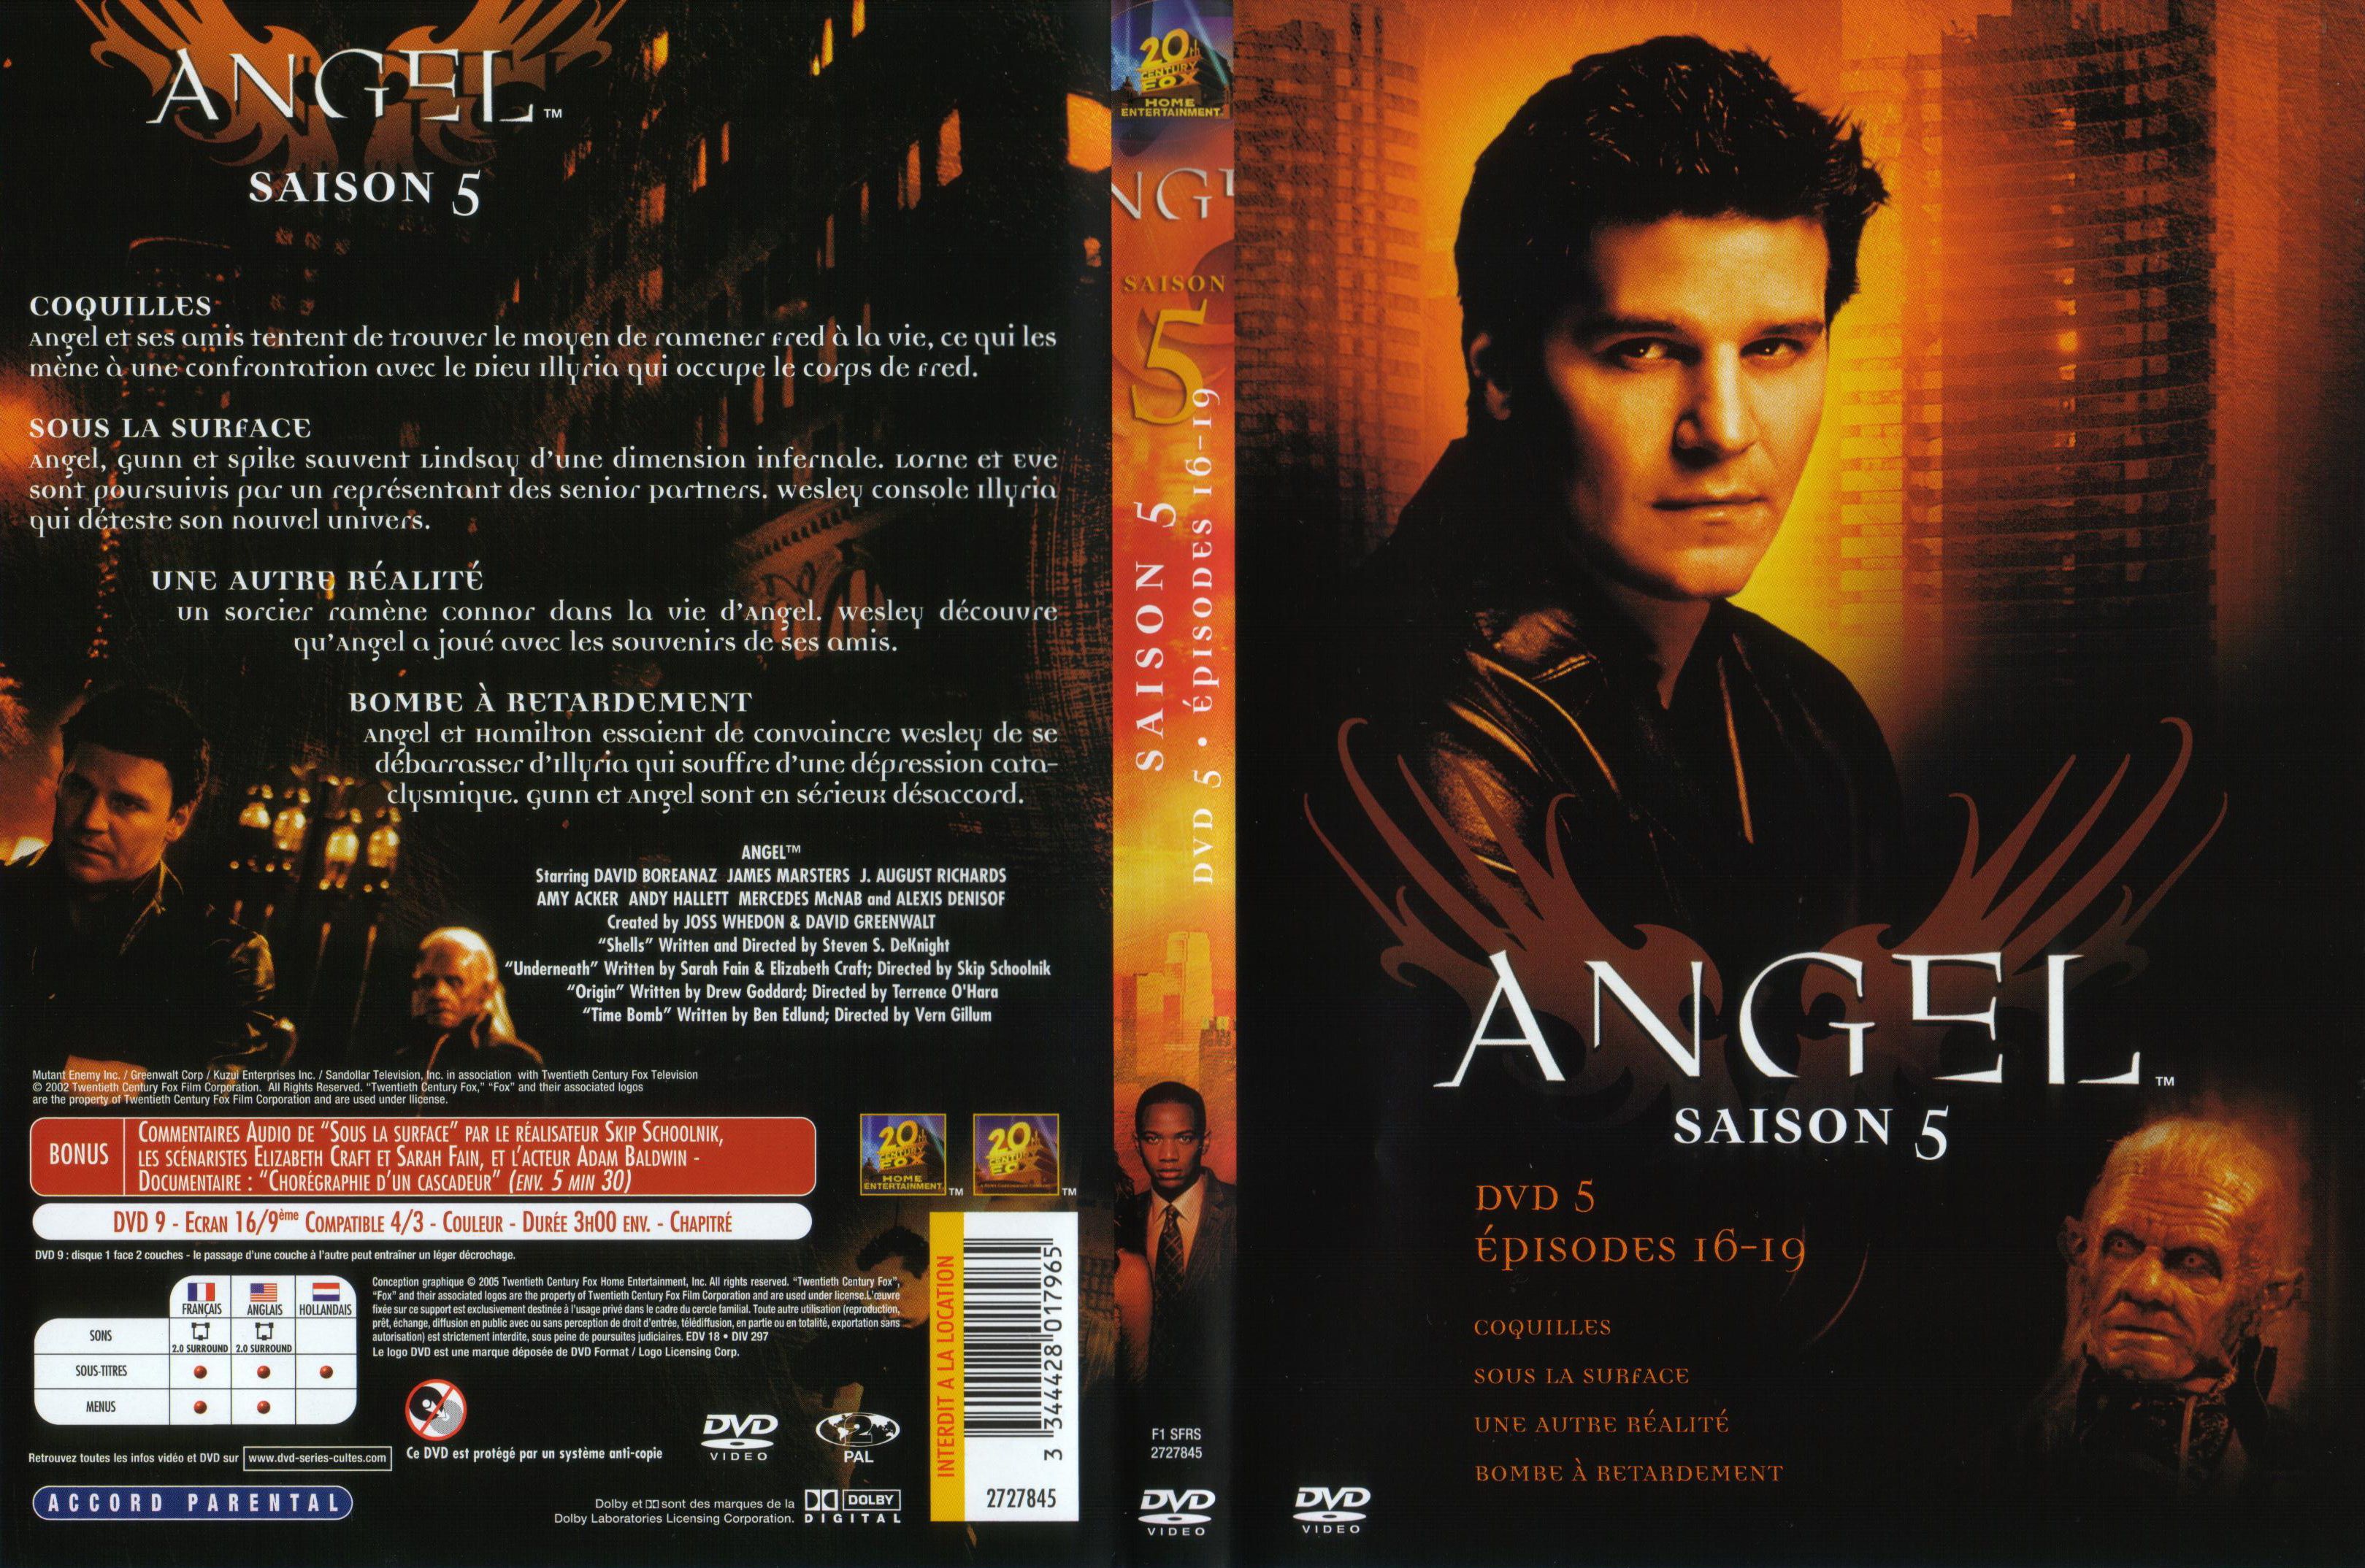 Jaquette DVD Angel Saison 5 dvd 5